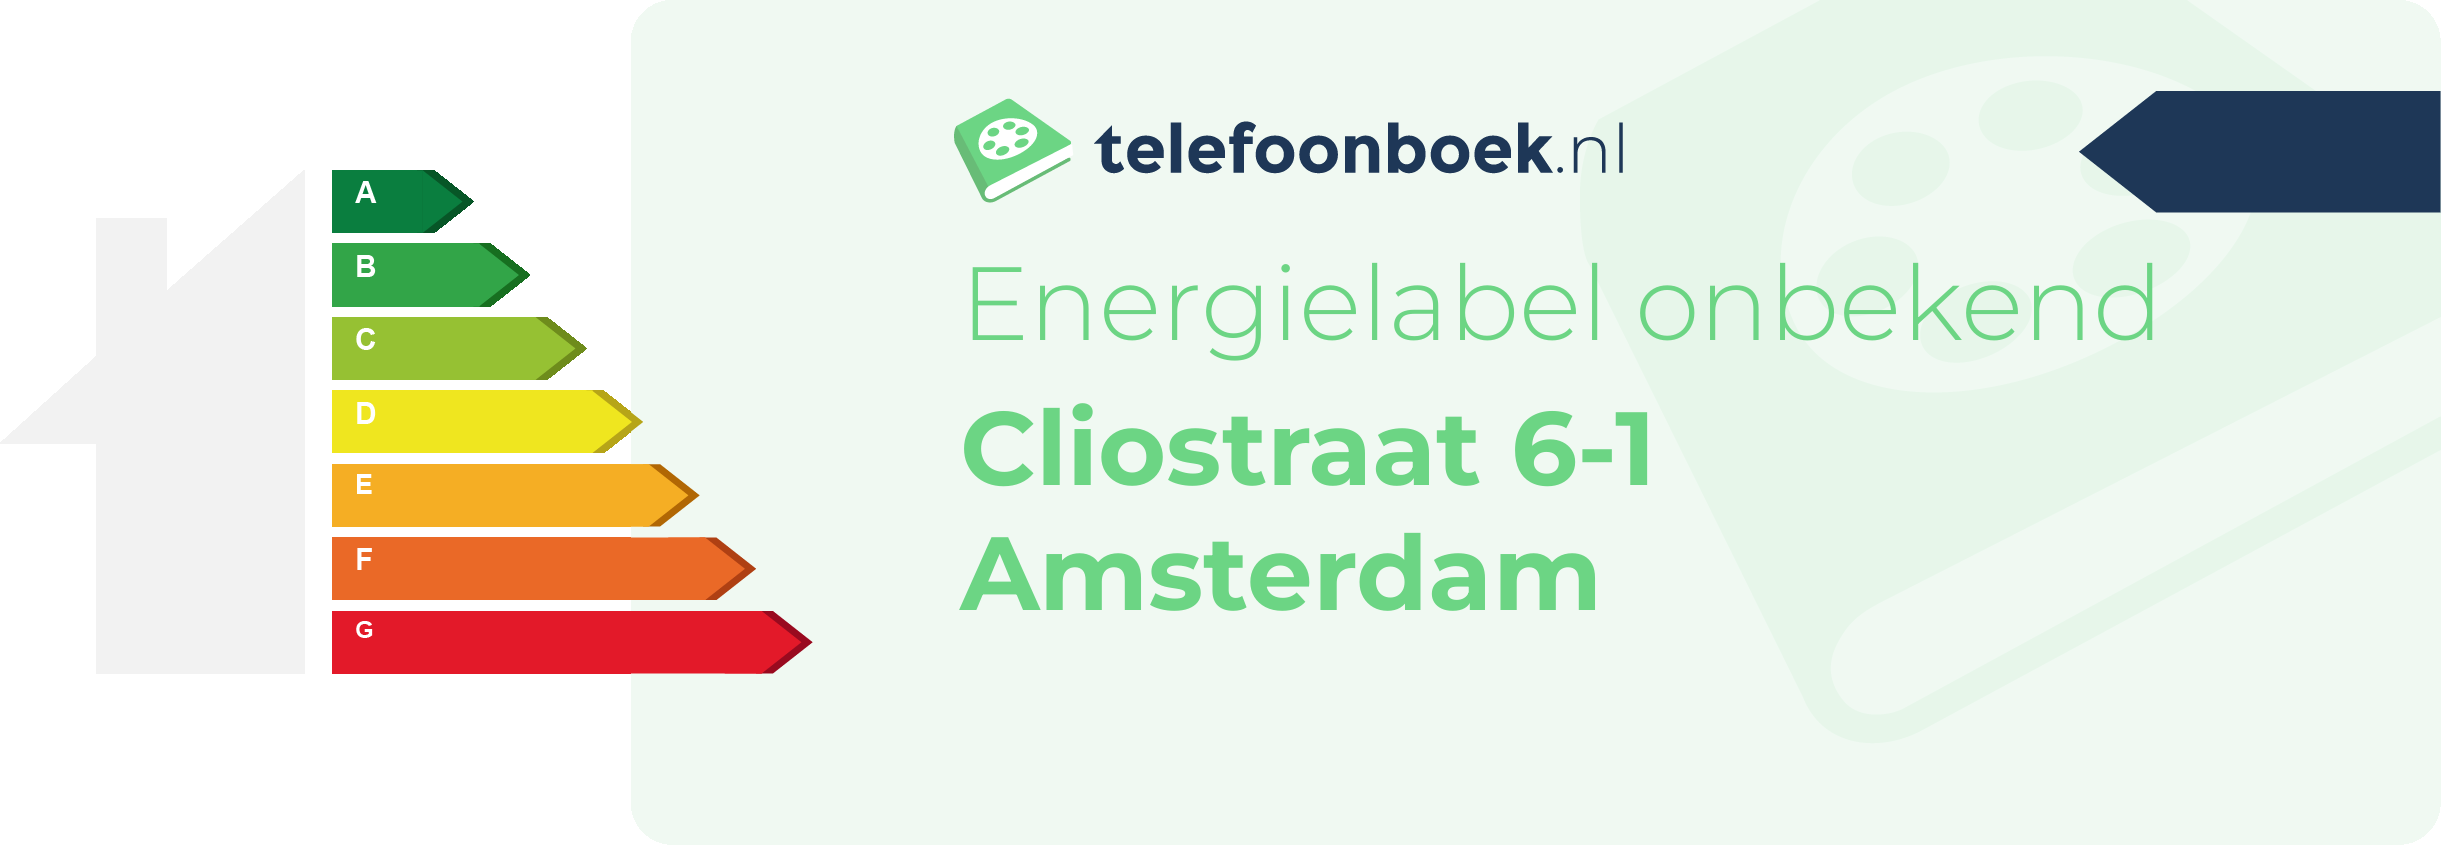 Energielabel Cliostraat 6-1 Amsterdam